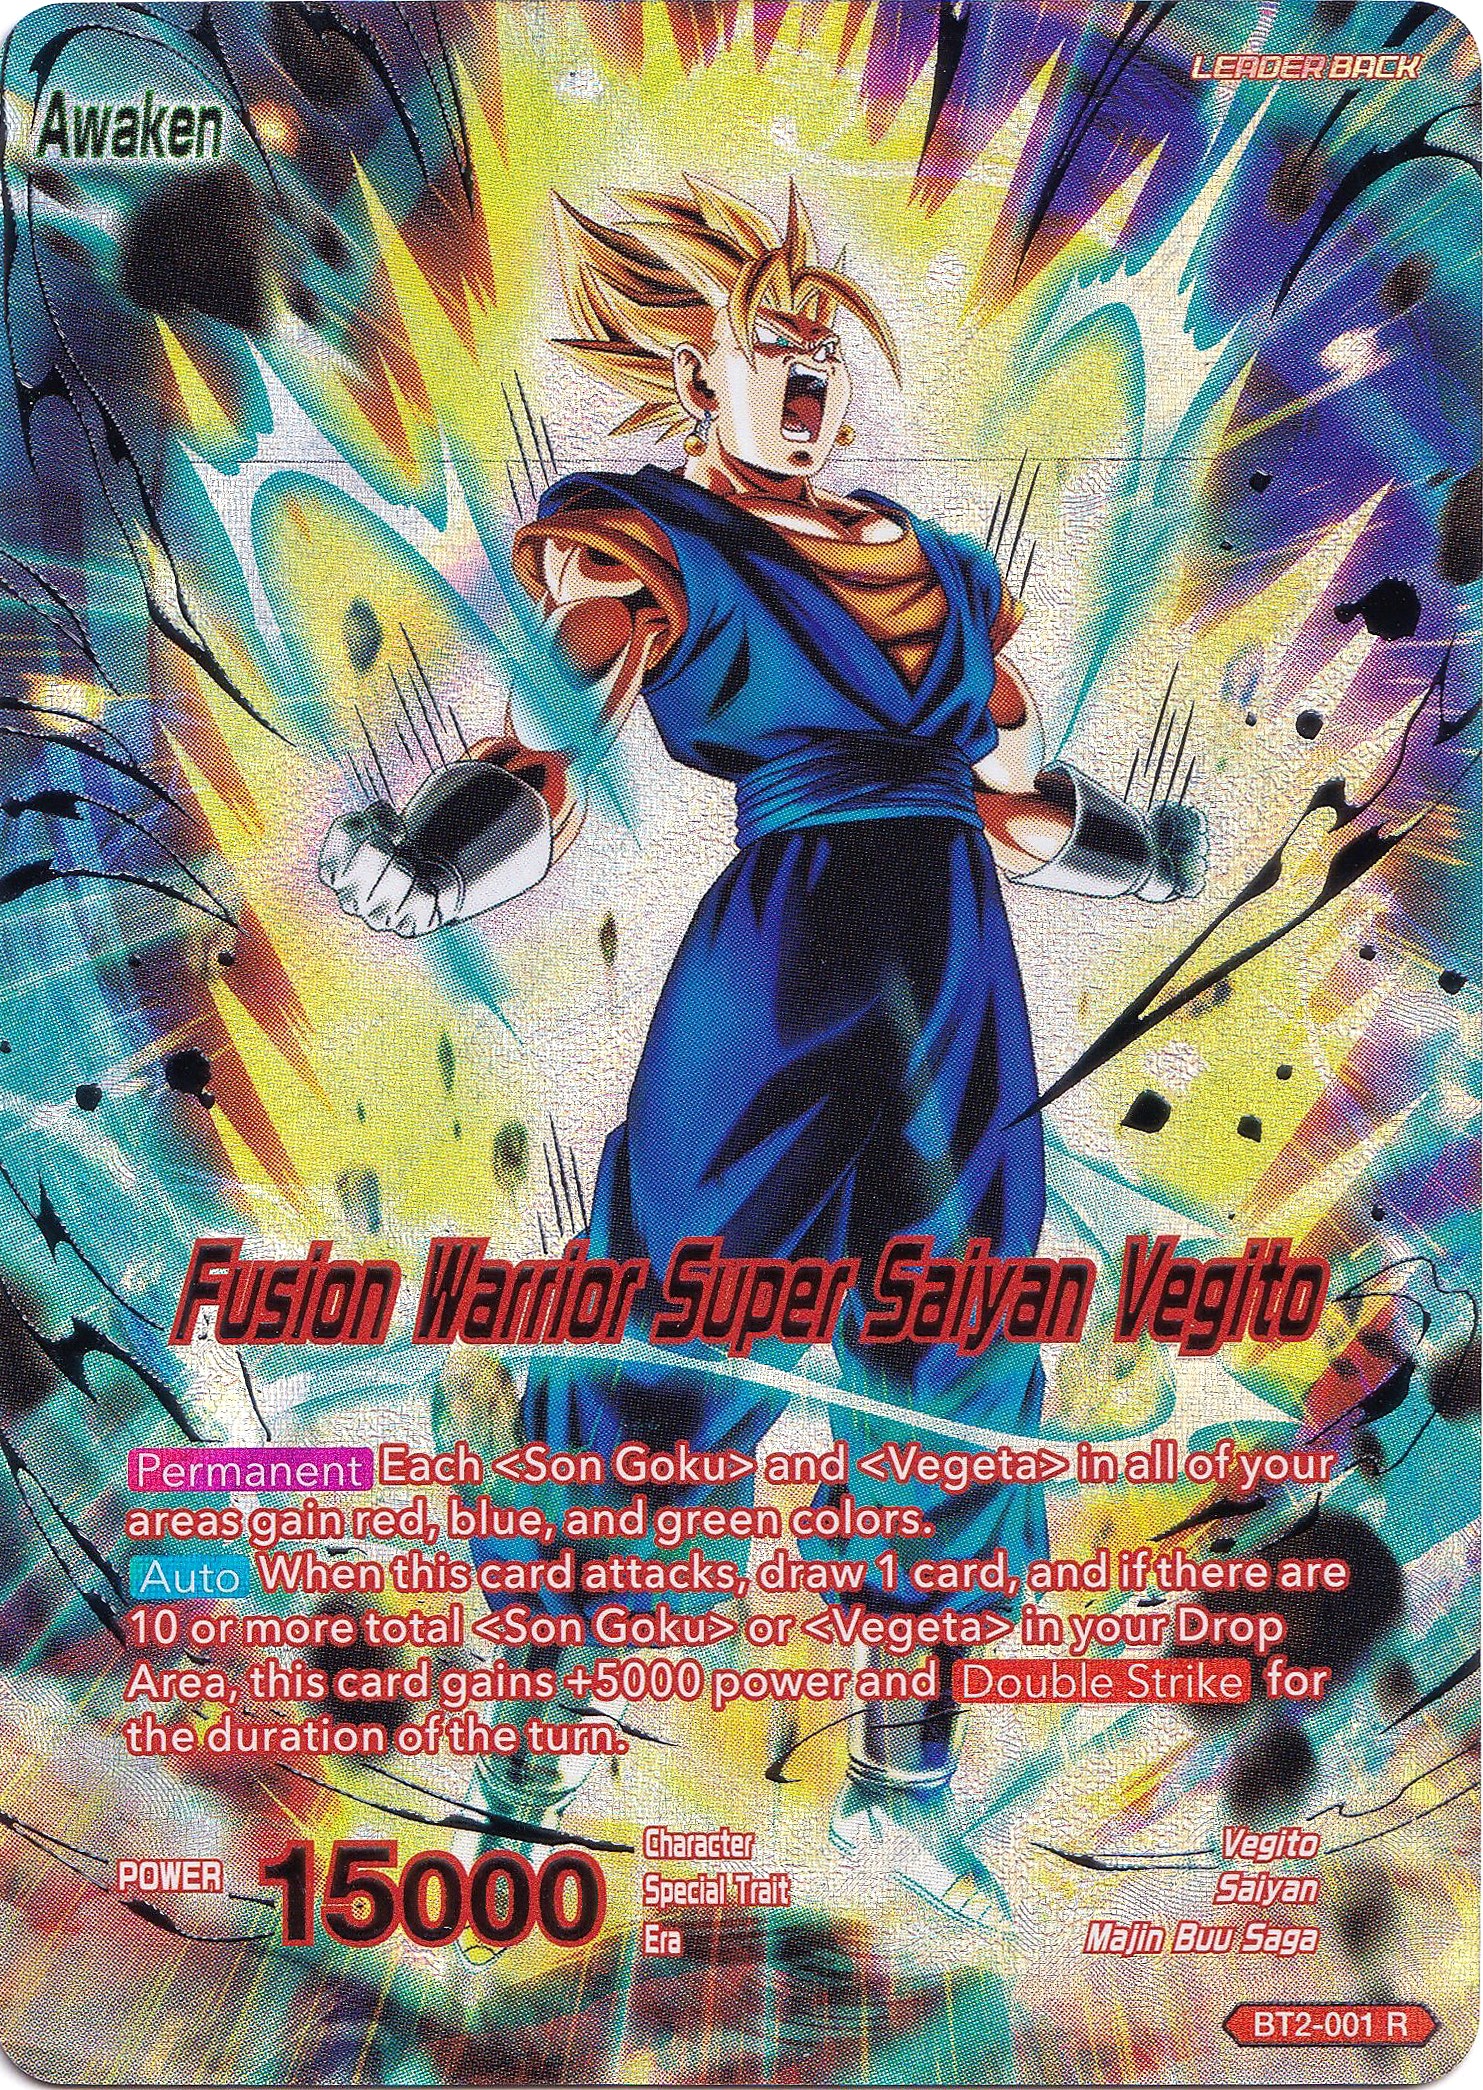 Vegito // Fusion Warrior Super Saiyan Vegito - Collector's Selection Vol. 1  - Dragon Ball Super CCG